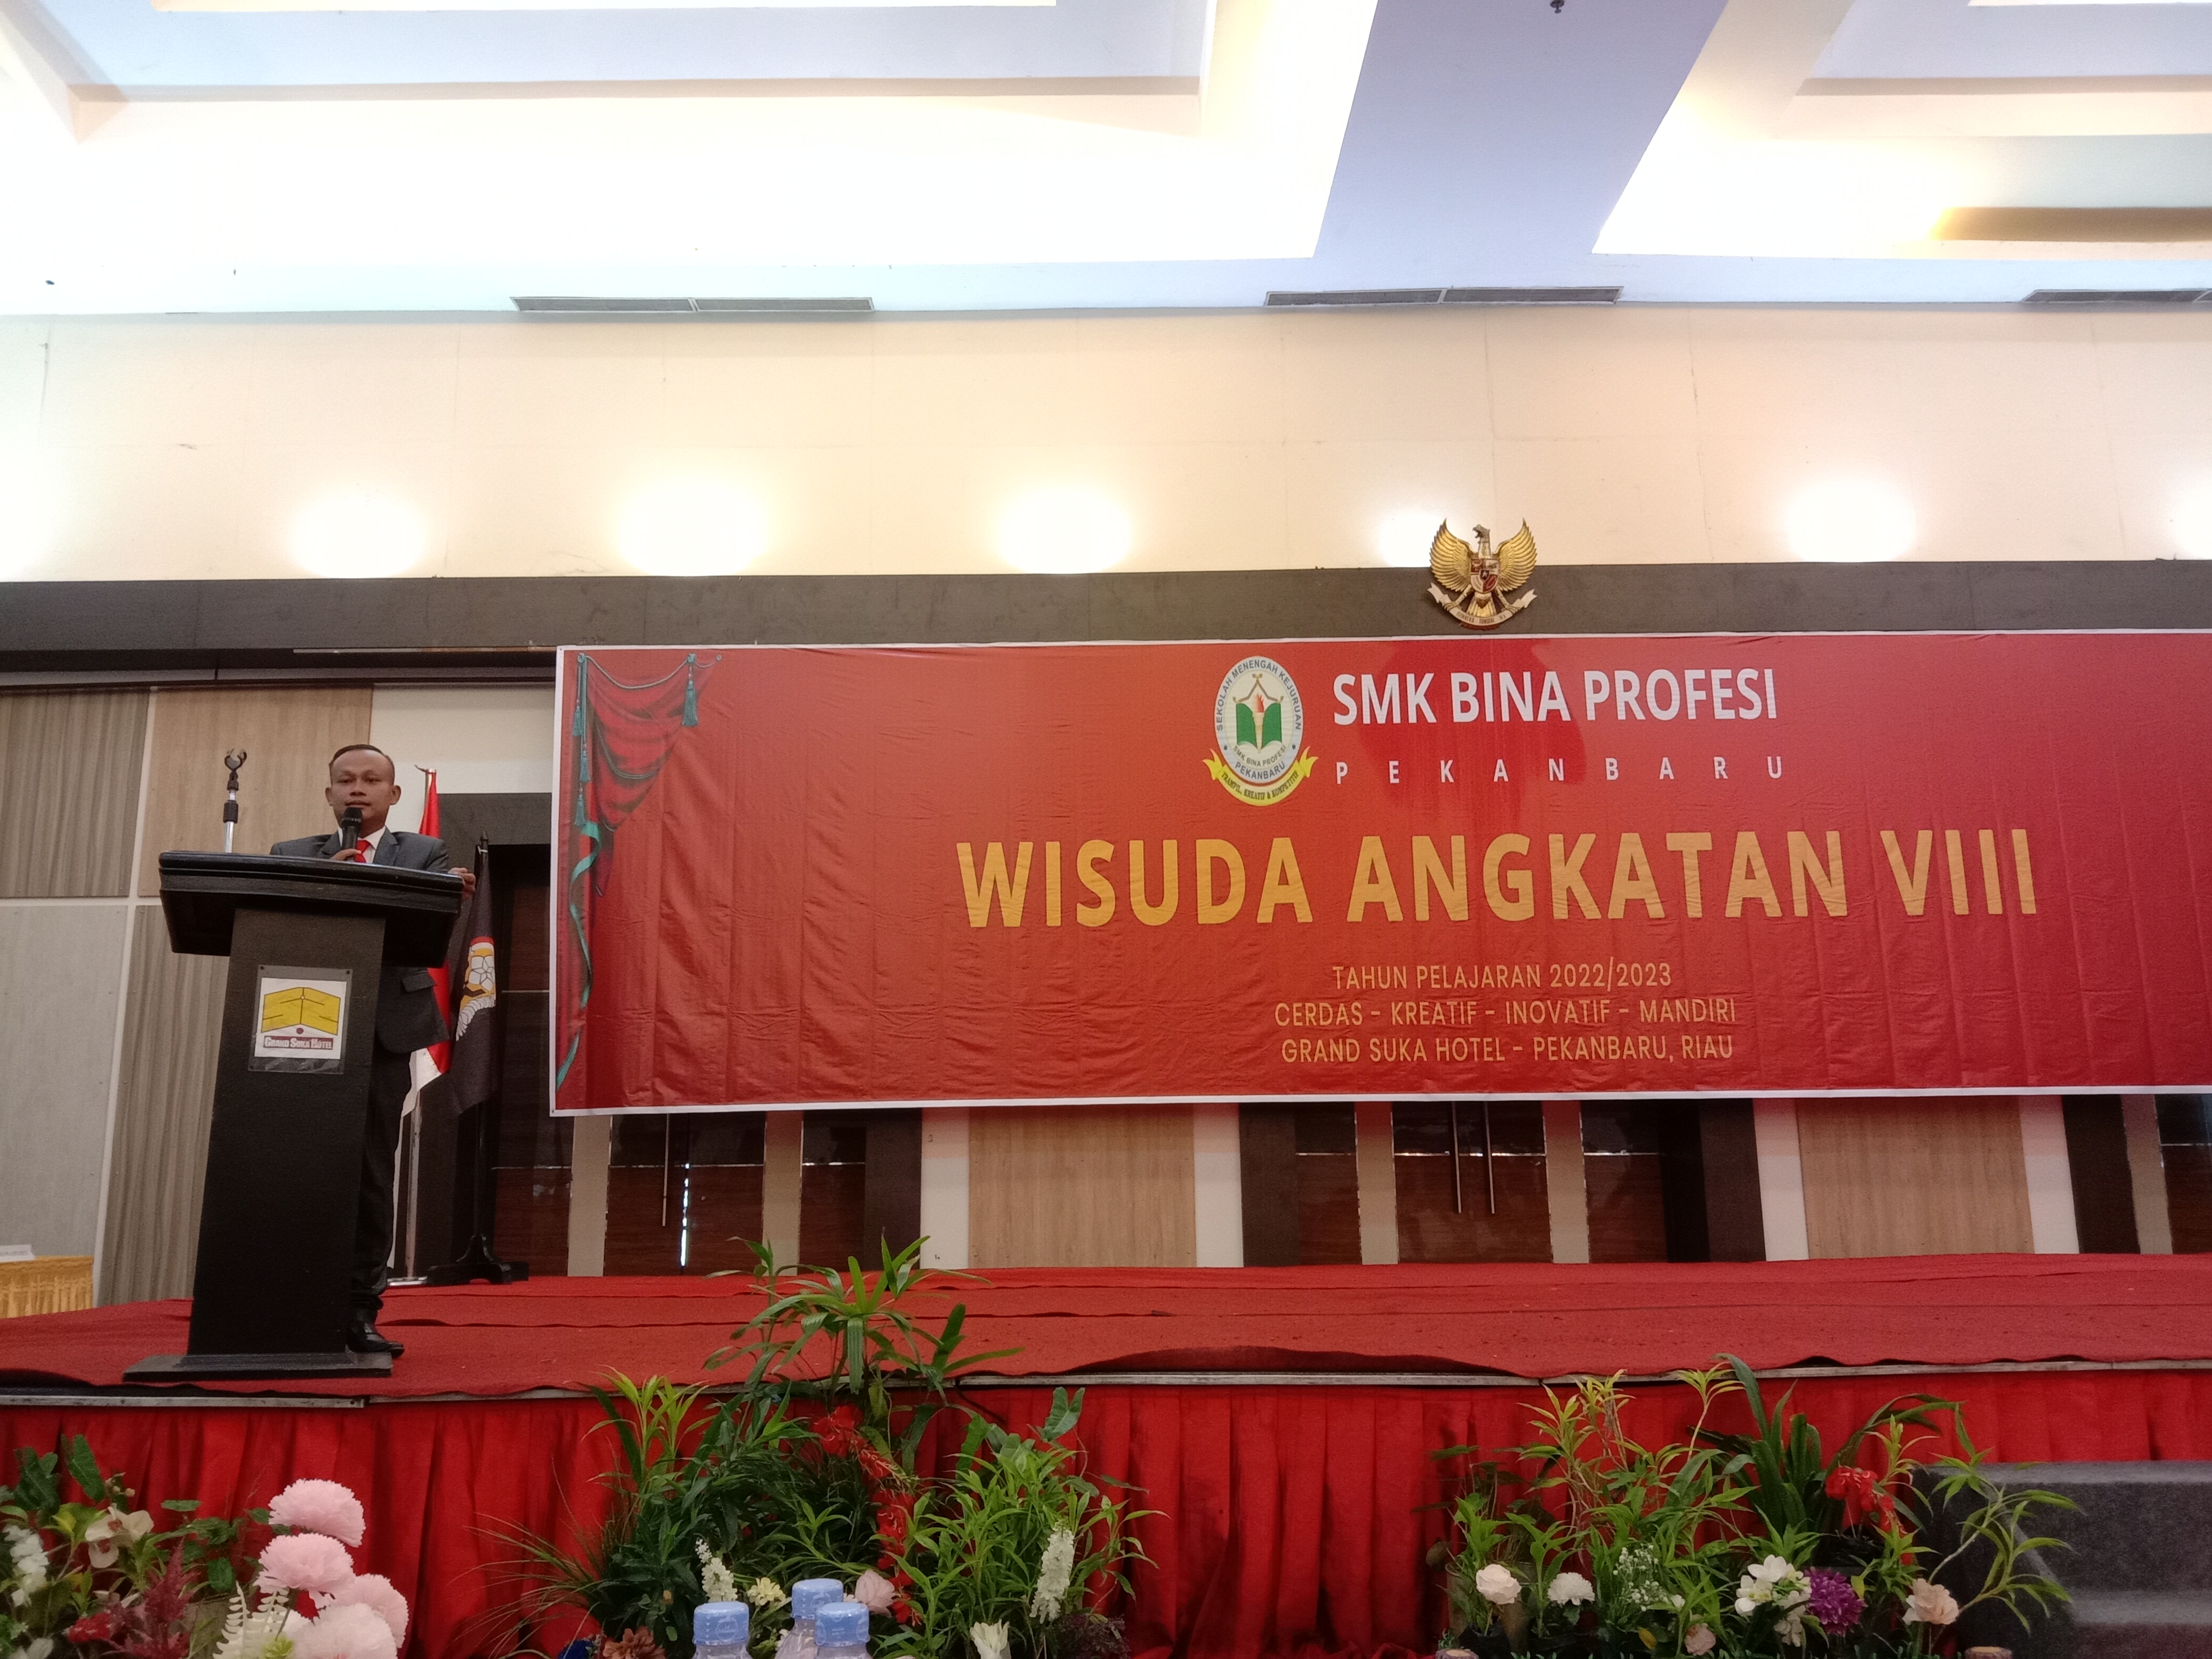 SMK Bina Profesi Pekanbaru Jadi yang Pertama di Indonesia Mewisuda Siswanya Tahun Ini